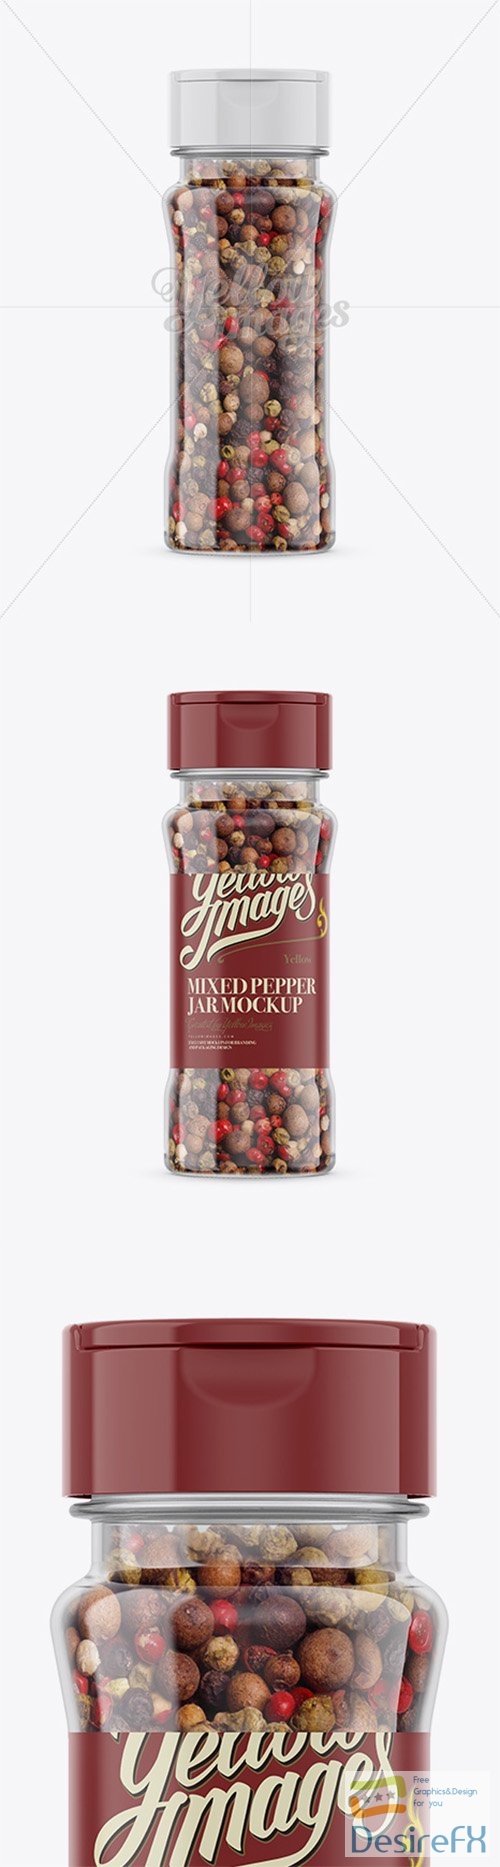 Mixed Pepper Jar Mockup 78509 TIF